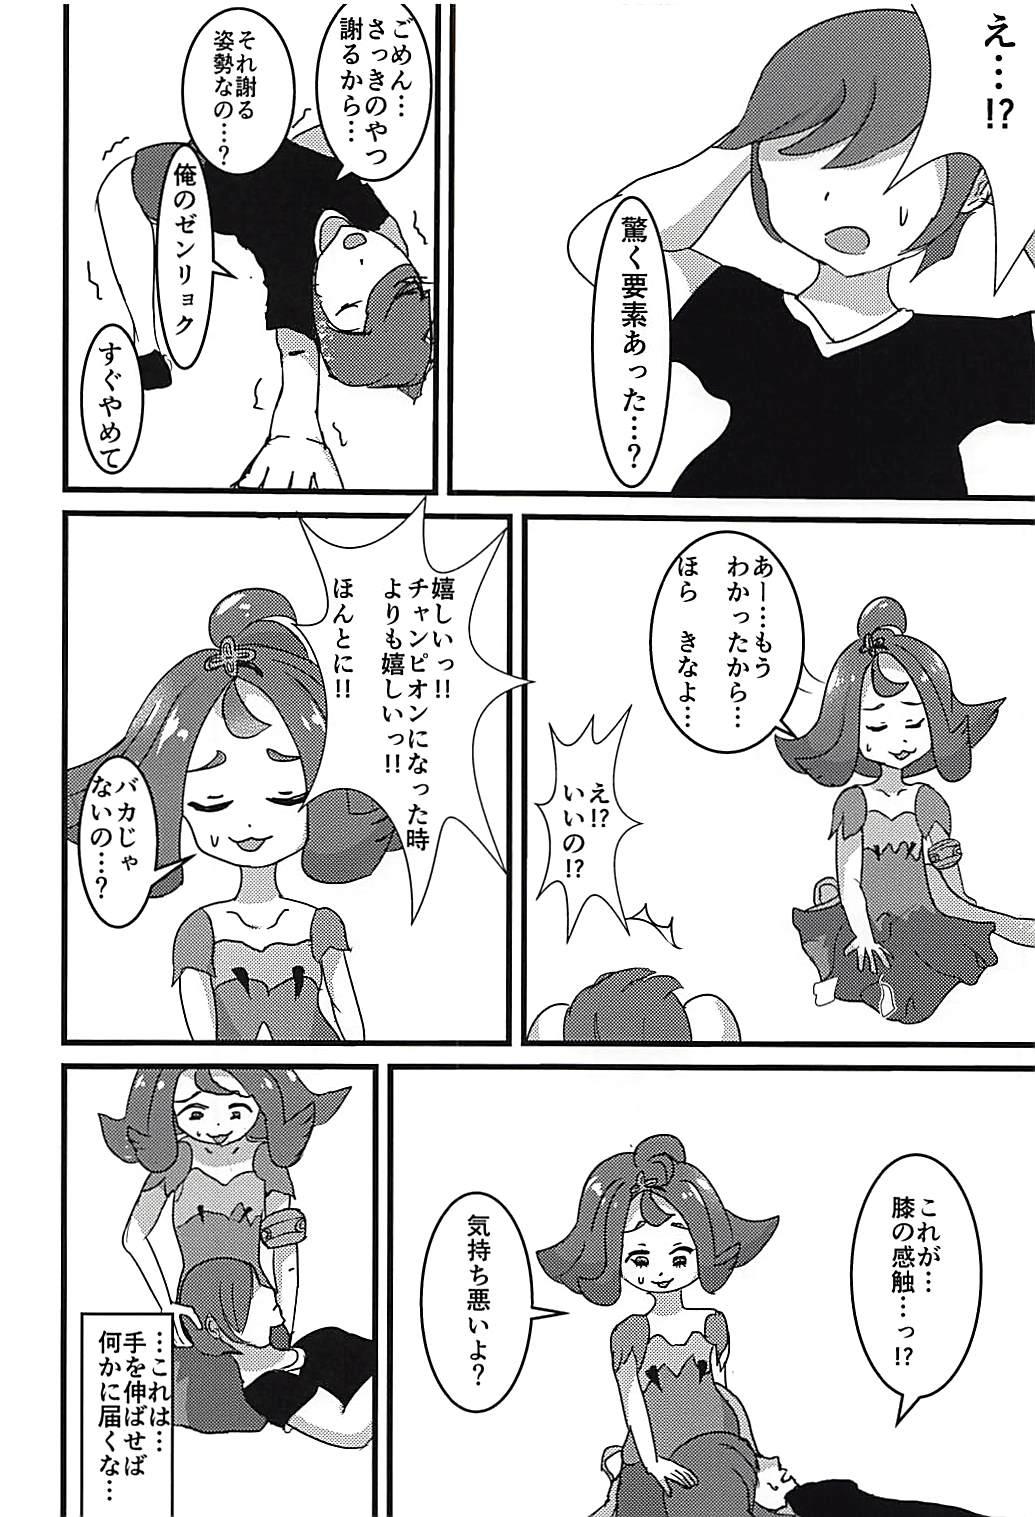 Publico Kanousei ga Aru to Iu nara Boku wa Nando demo Taiyou ni datte Te o Nobasu - Pokemon Storyline - Page 4